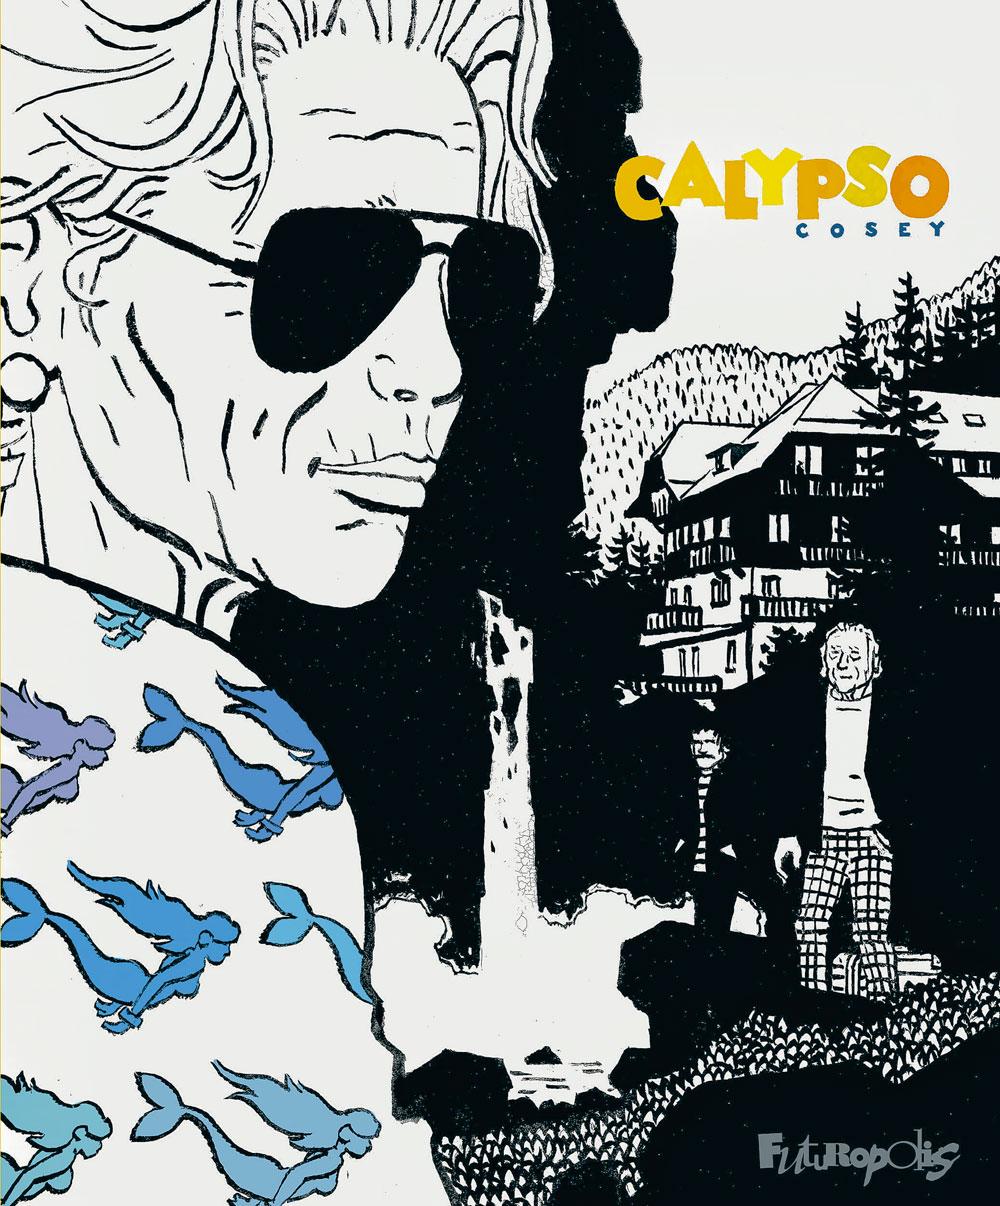 Calypso, par Cosey,  éd. Futuropolis, 104 p.